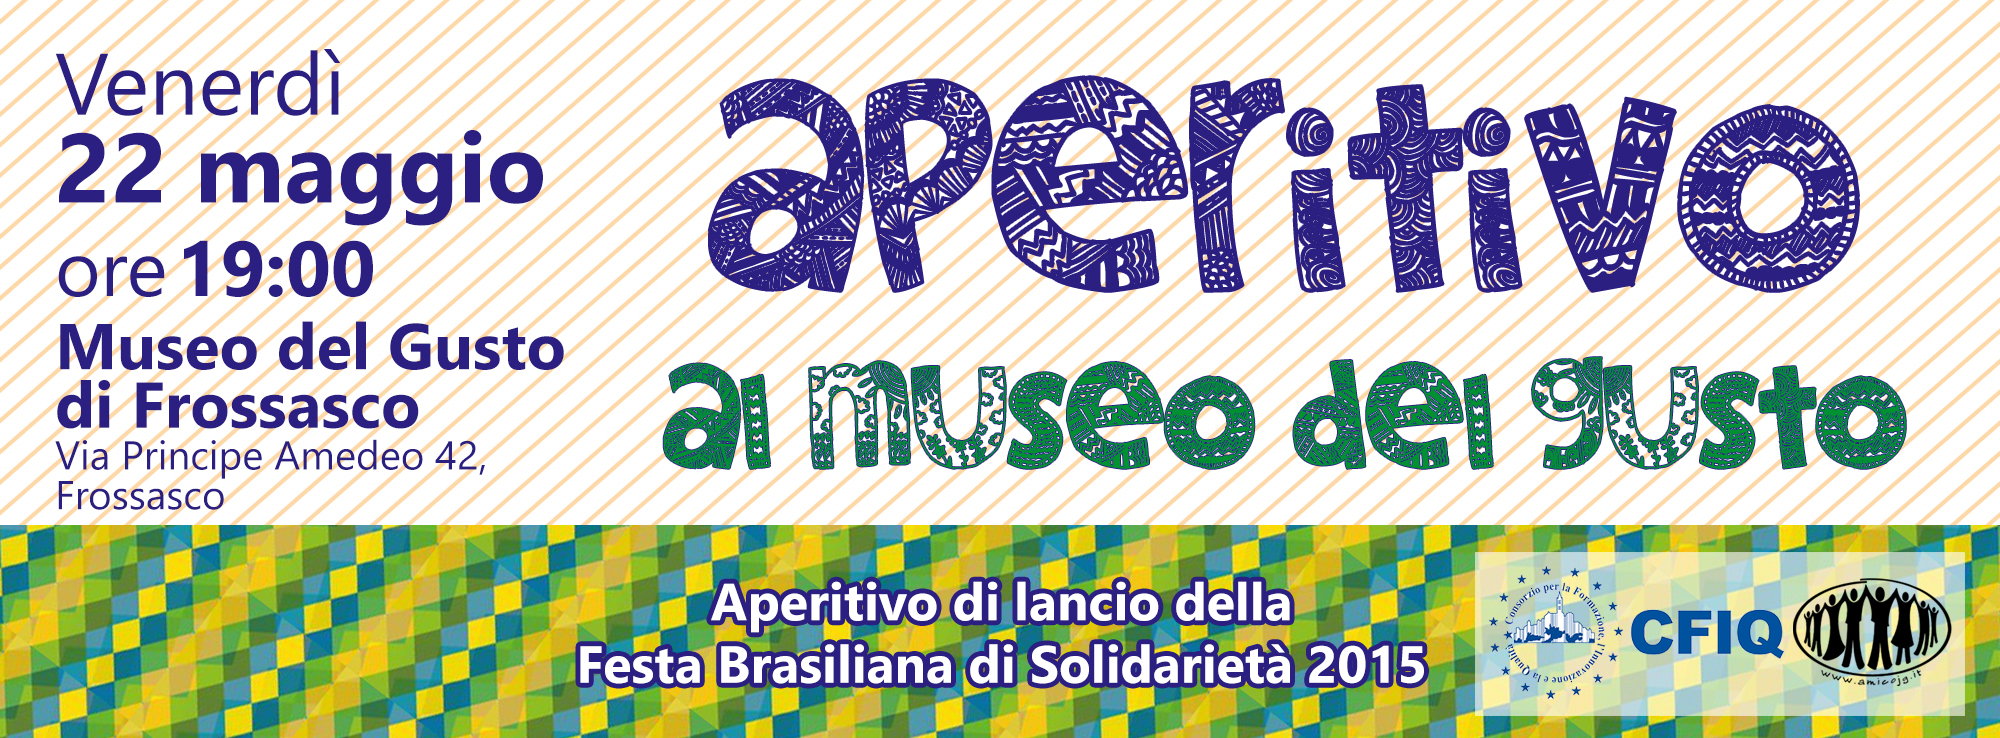 22/05/2015: Aperitivo per lanciare la Festa al Museo del Gusto!